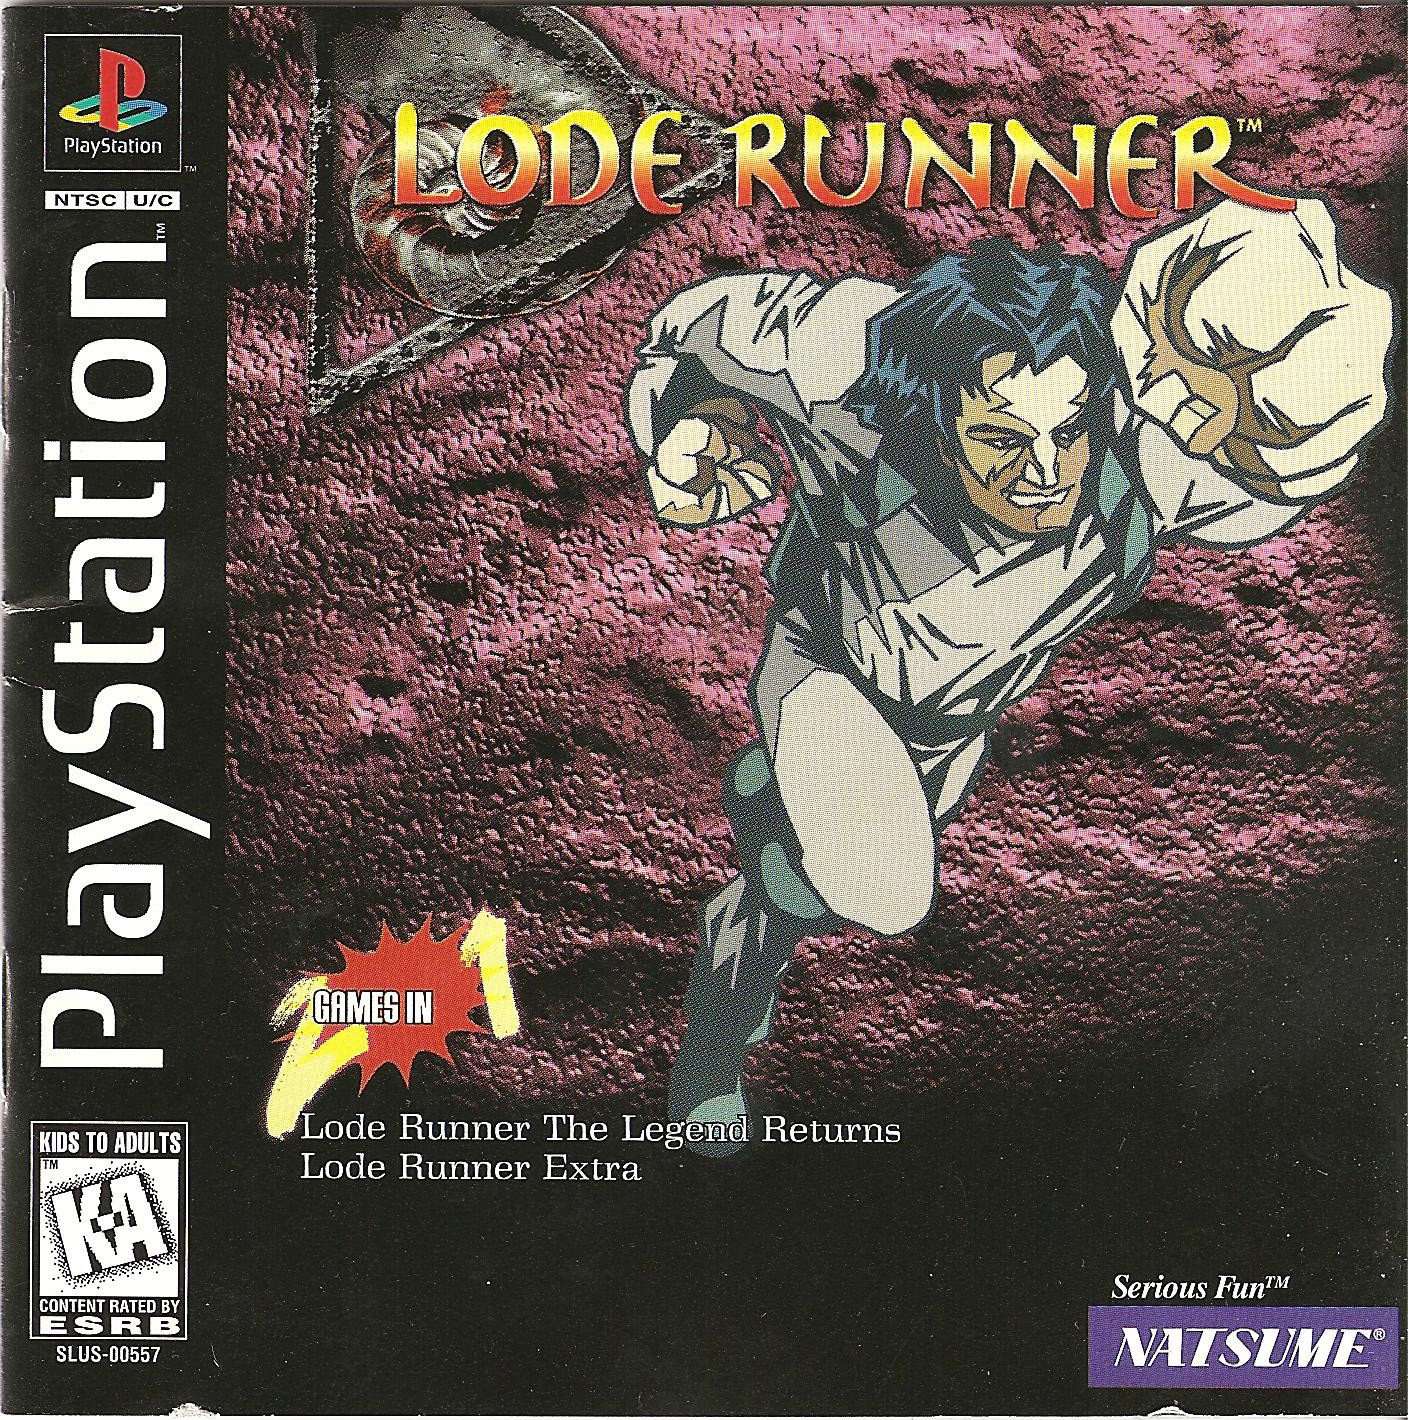 The legendary return. Lode Runner игра первая. Lode Runner PLAYSTATION. Legend игра на ps1. PLAYSTATION 1 игры.